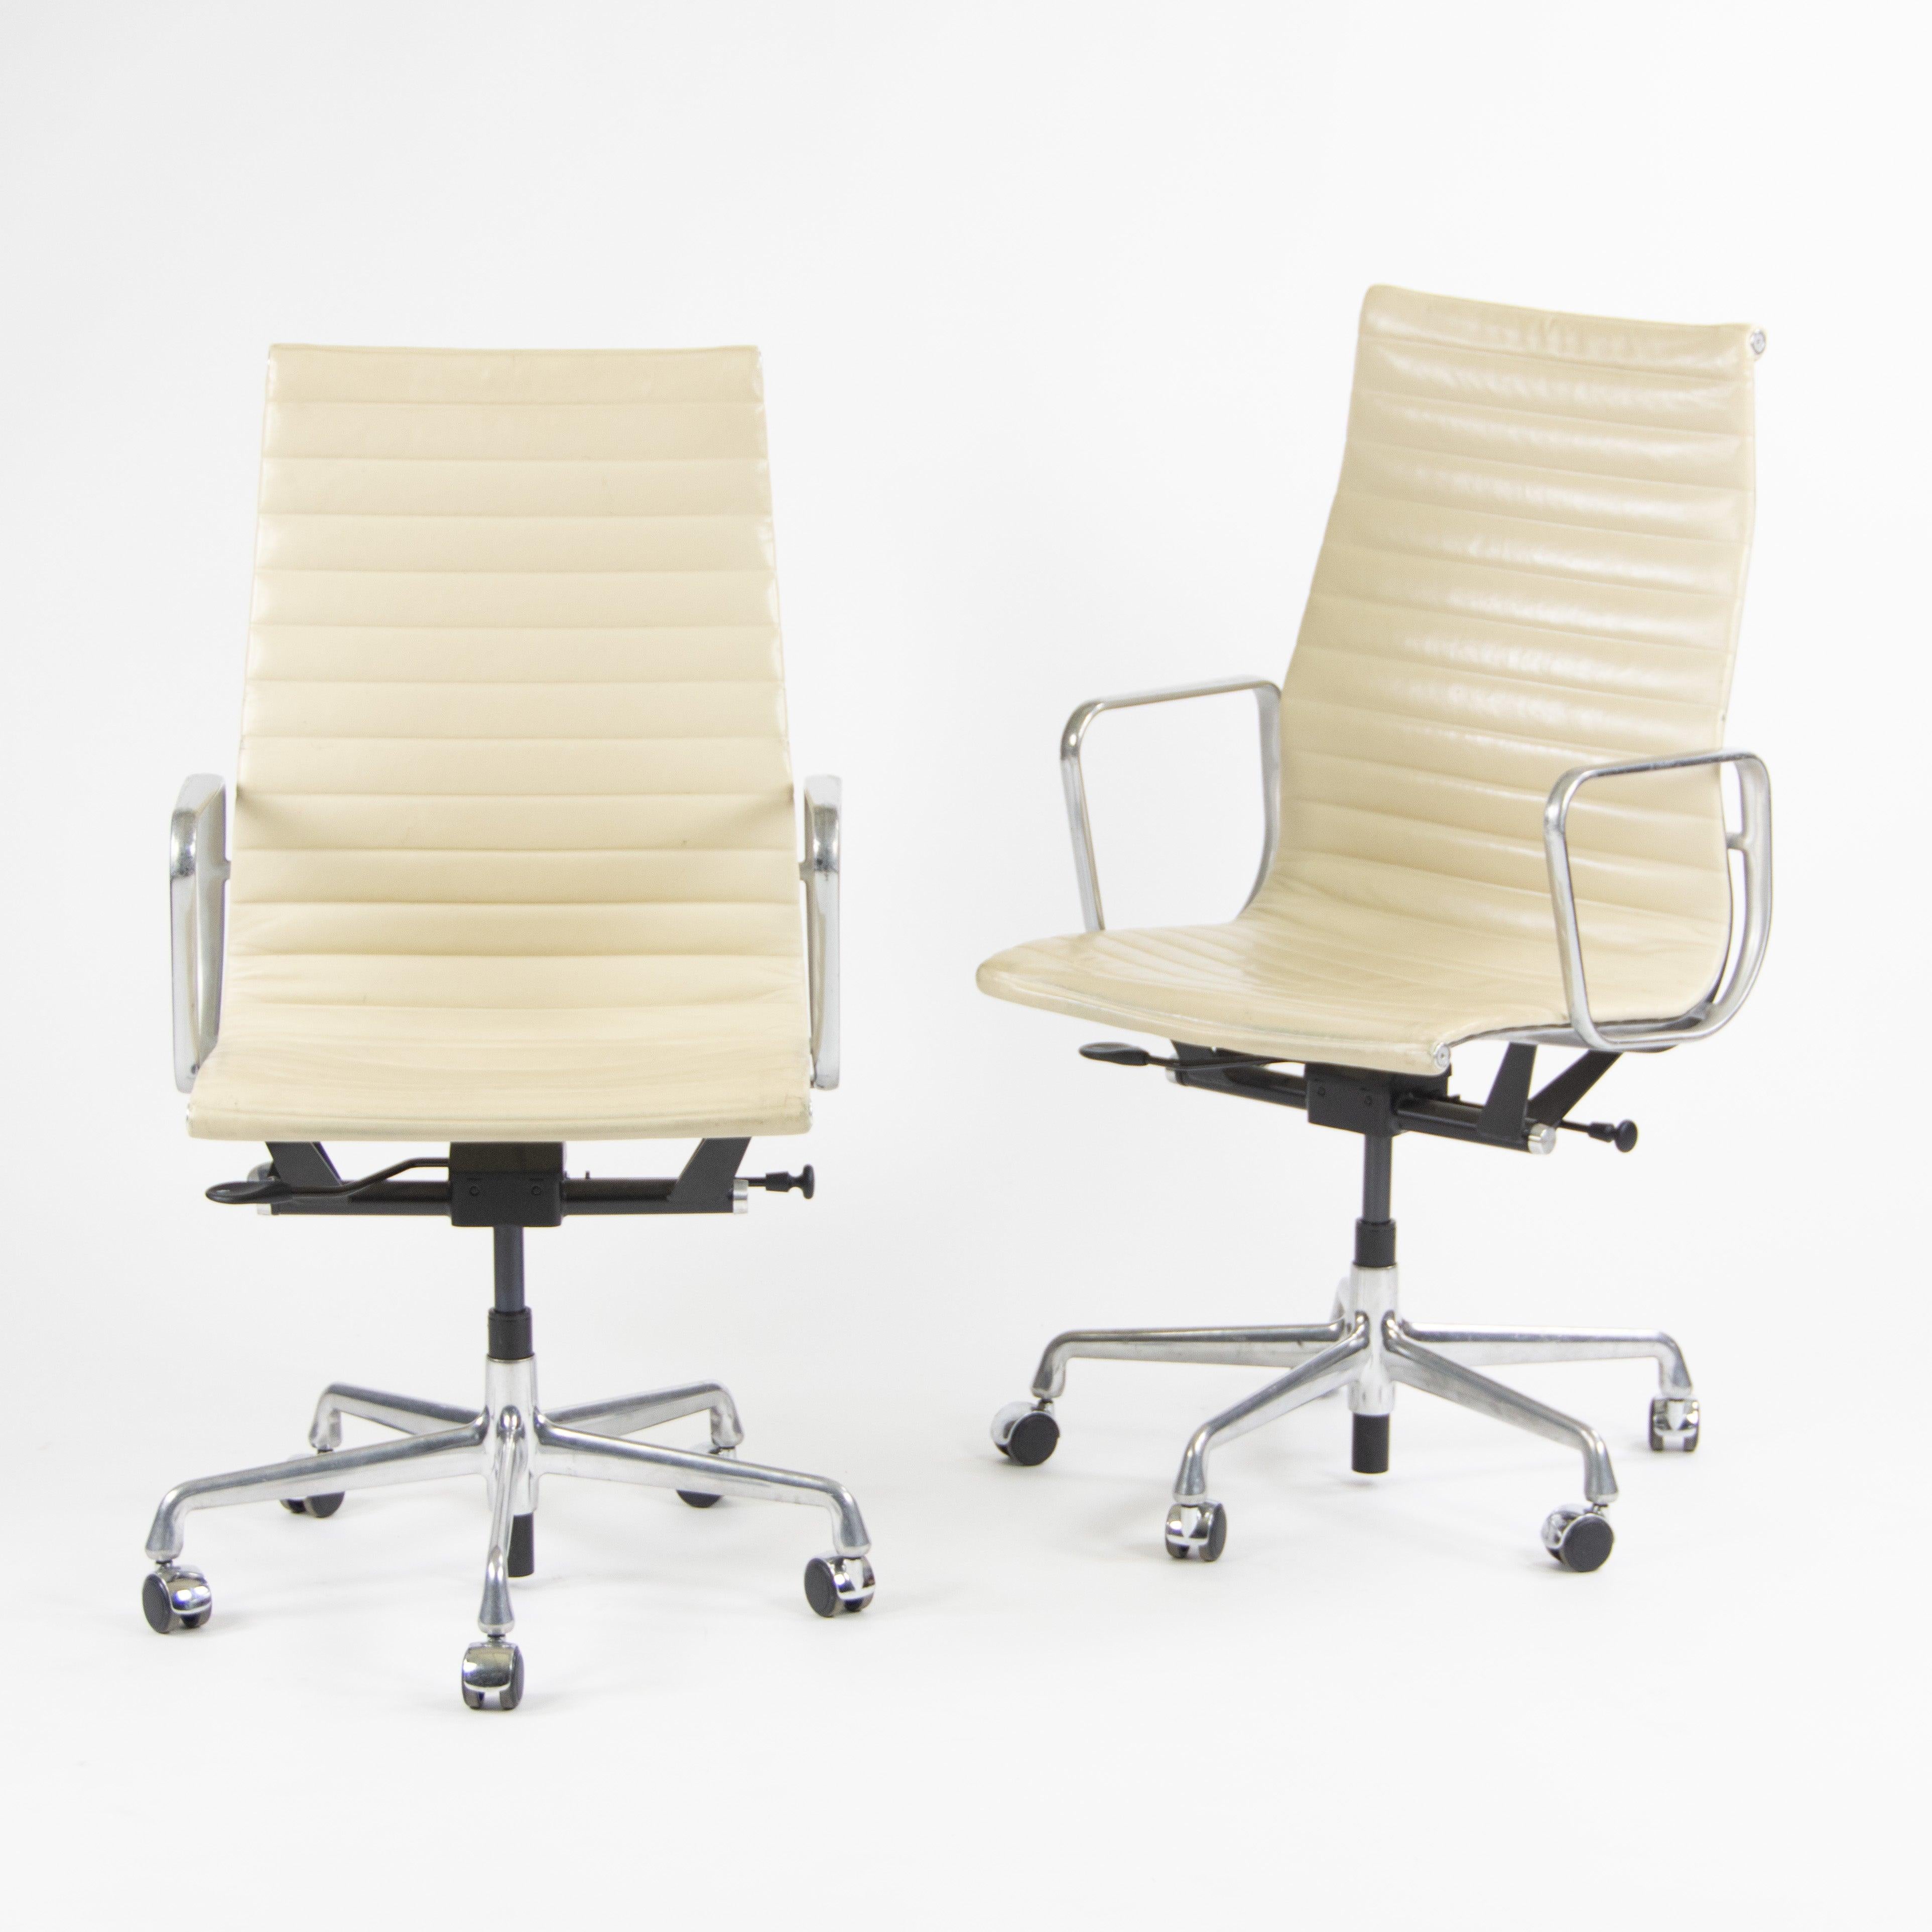 
Nous proposons à la vente un ensemble de chaises de bureau Eames Herman Miller en aluminium avec dossier haut et revêtement en cuir ivoire/crème (blanc cassé). Ces magnifiques chaises proviennent d'une entreprise de Washington, DC.
Le cuir est très